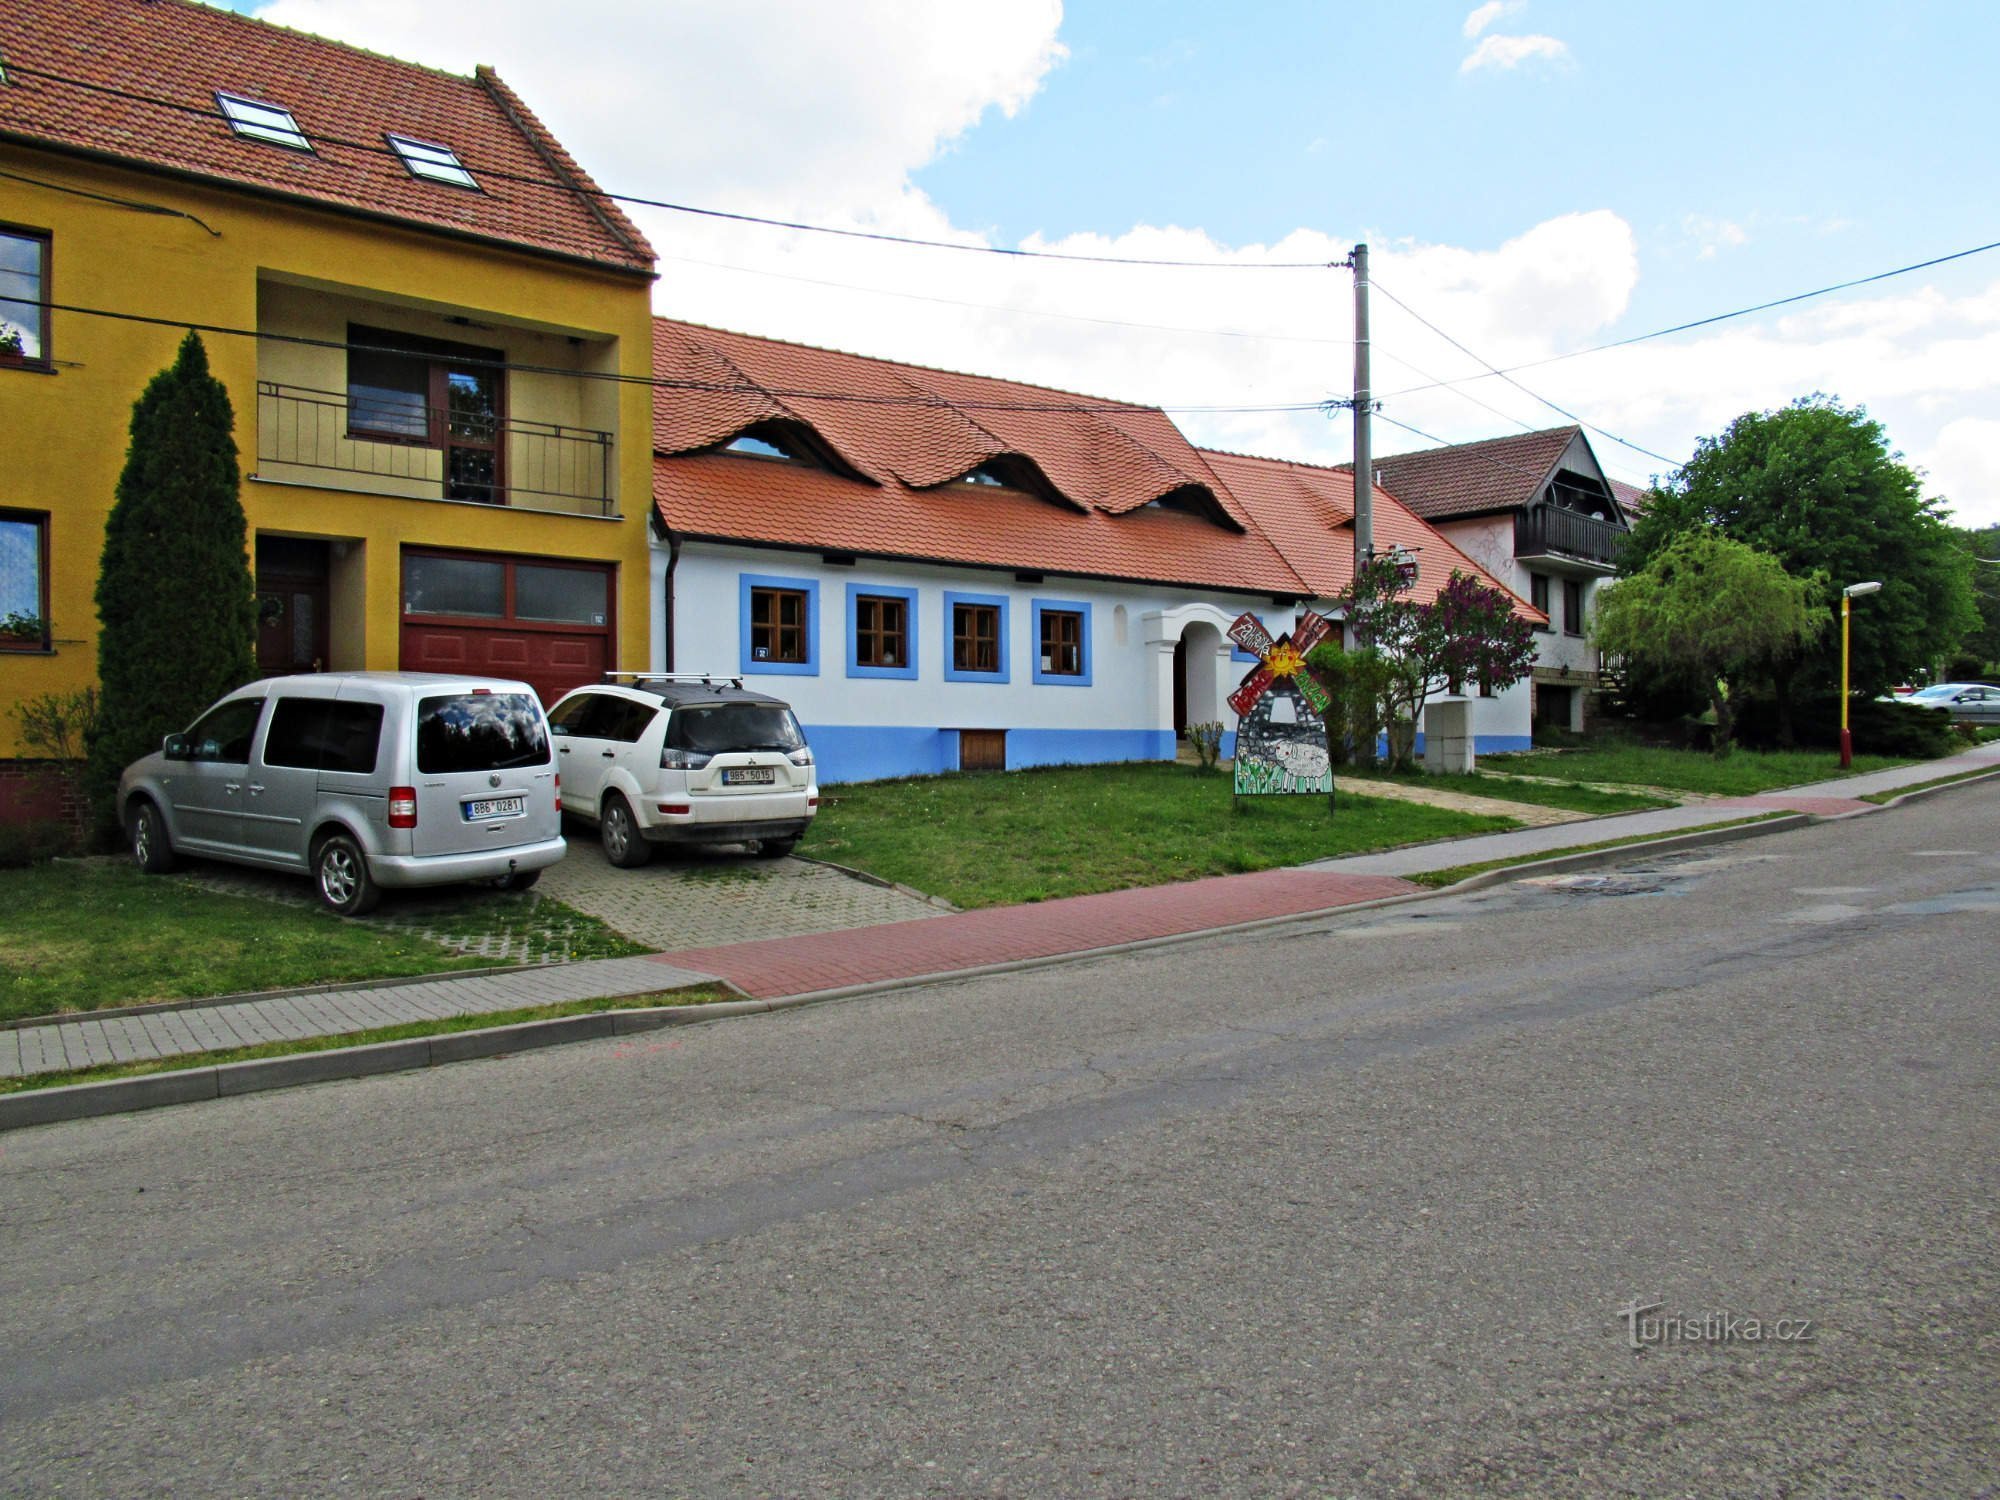 Pension U větrného mlýna i landsbyen Kuželov i Slovácko